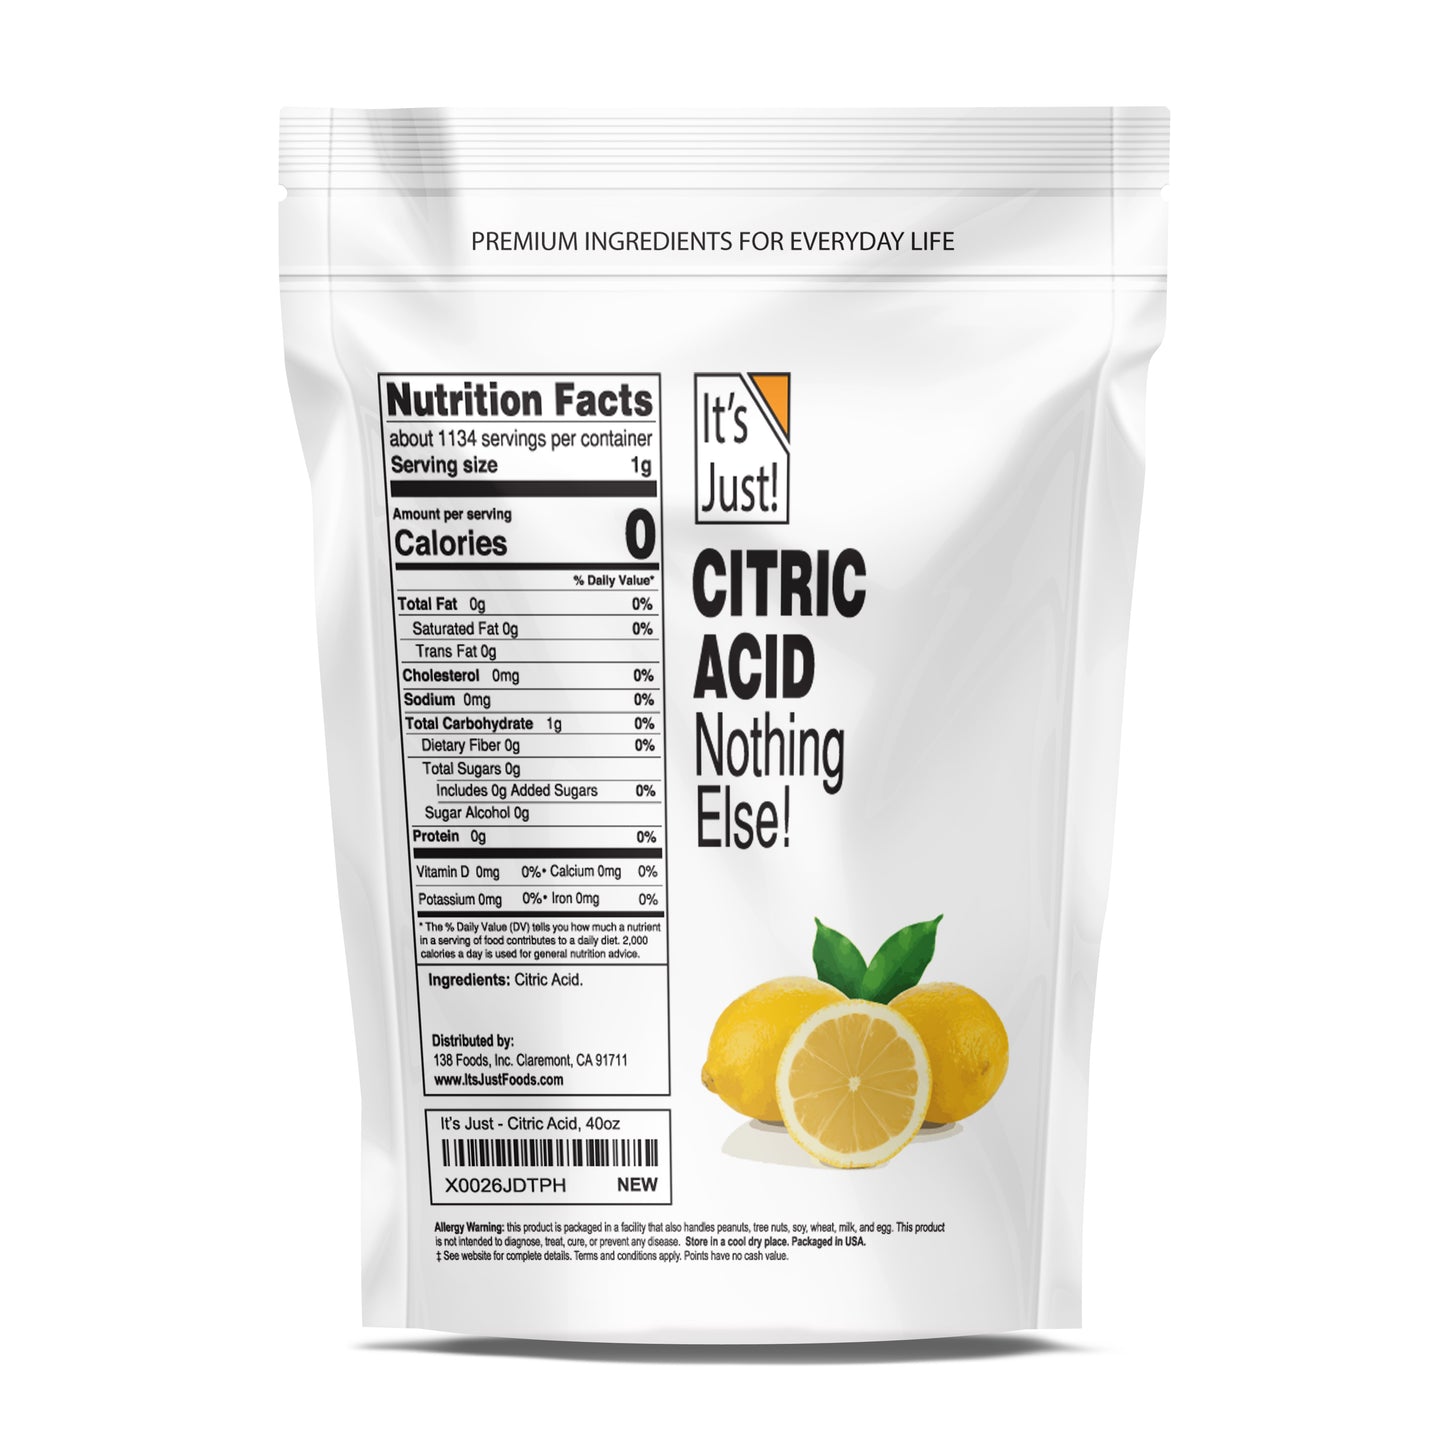 It's Just! - Citric Acid